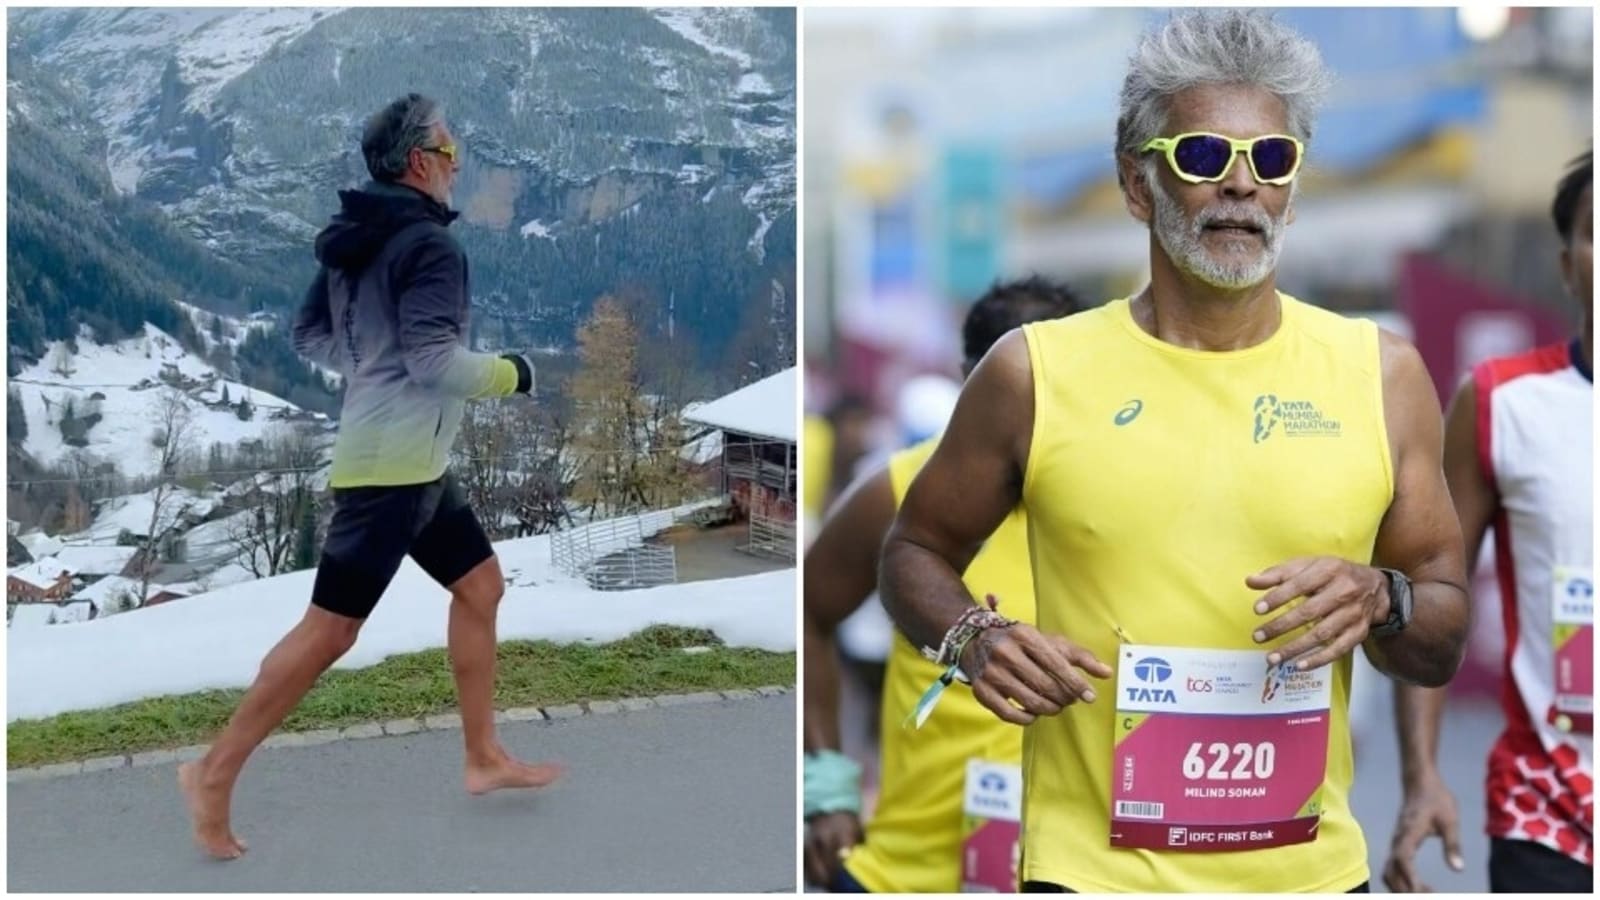 Milind Soman biega boso przy 3 stopniach w Szwajcarii;  zobacz korzyści płynące z joggingu dla osiągnięcia swoich celów fitness |  Zdrowie